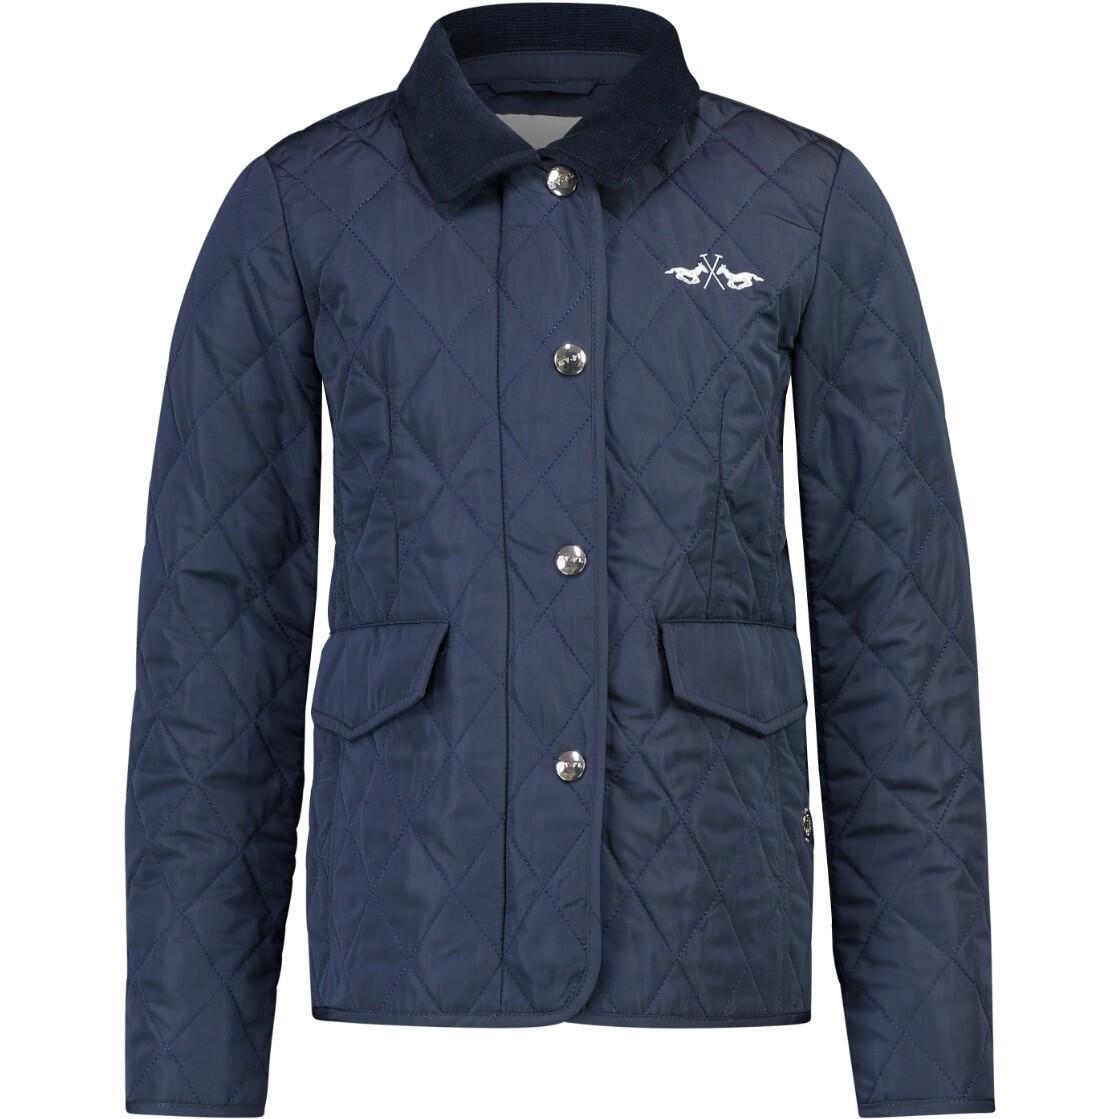 Куртка HV Polo HVP Linde для верховой езды, темно-синий